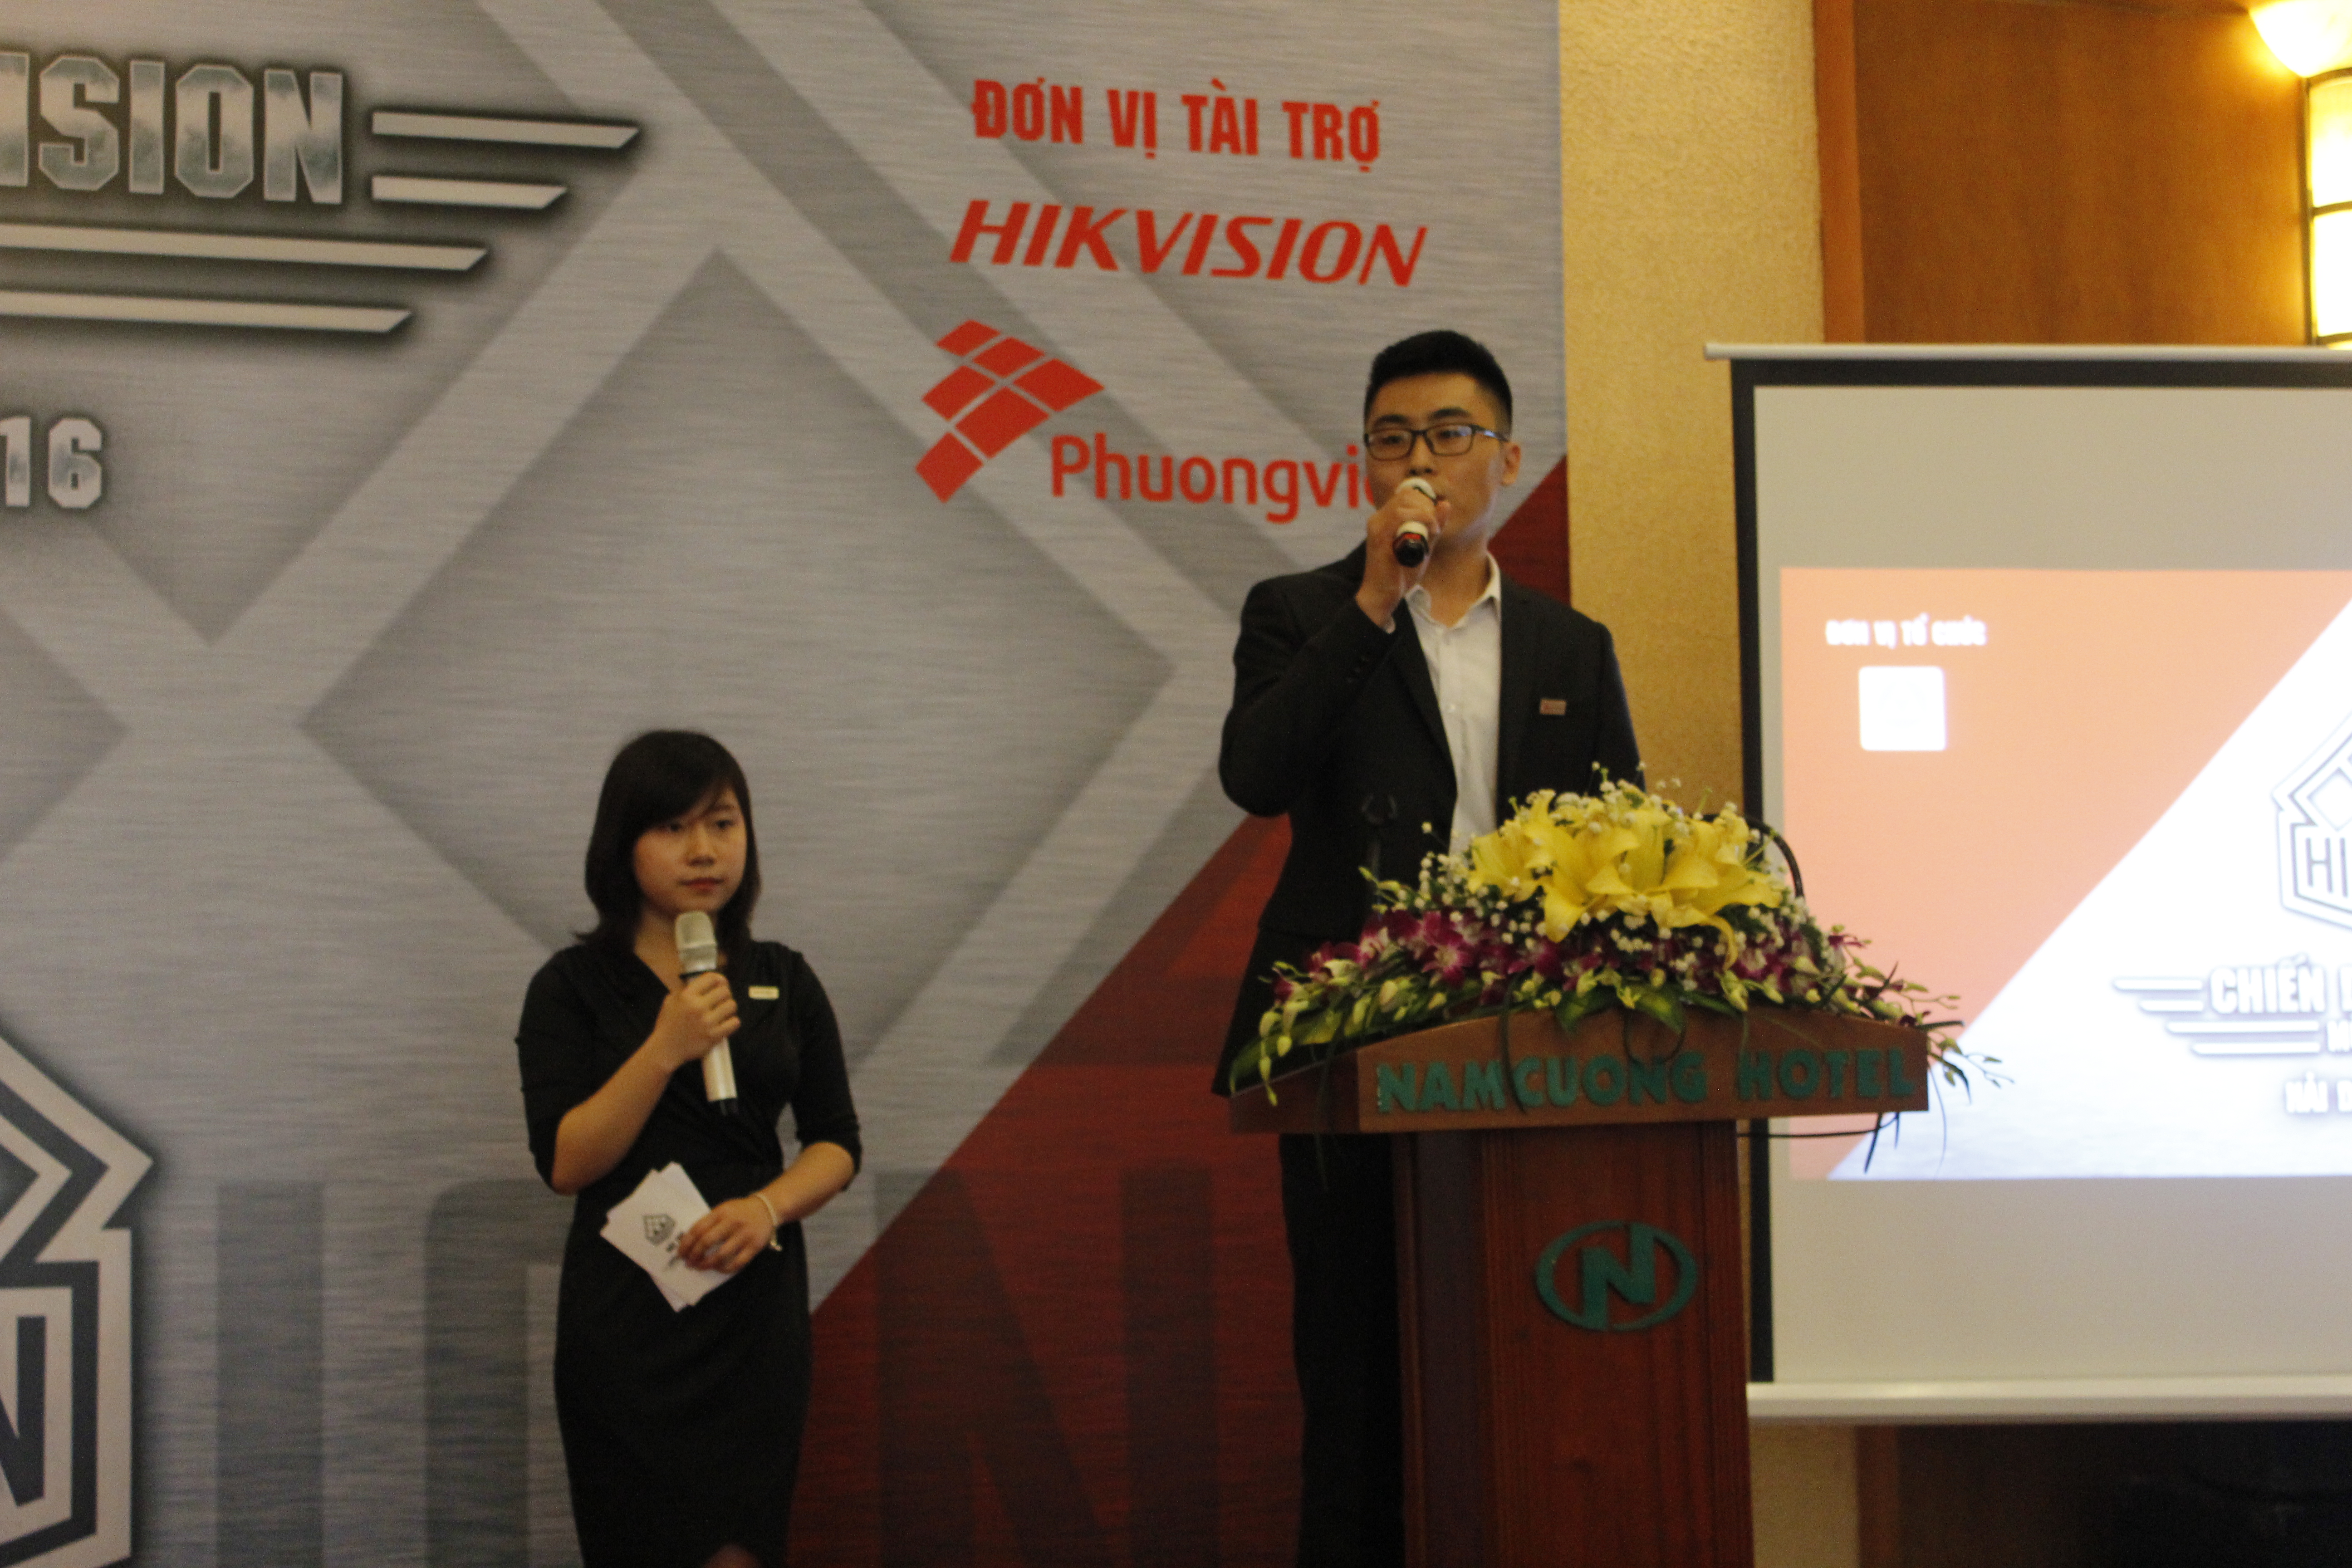 Mr Andrew, phụ trách kinh doanh thị trường Việt Nam chia sẻ về định hướng hỗ trợ thị trường toàn quốc